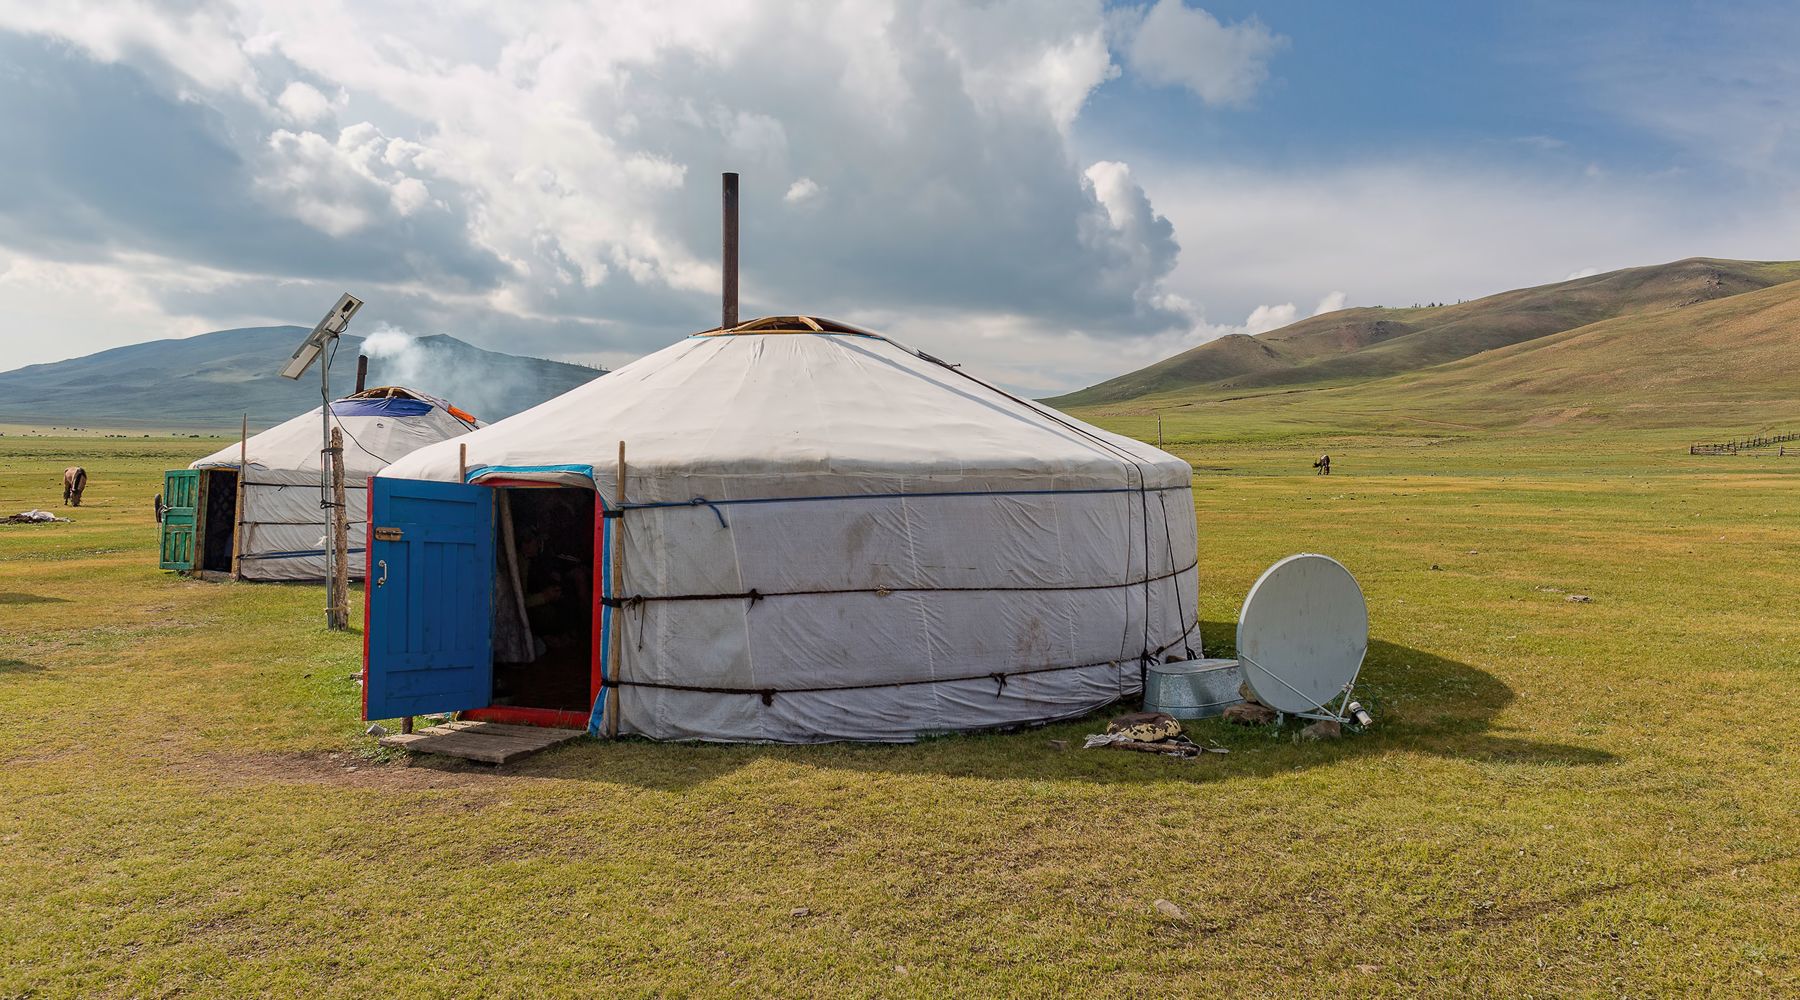 beautiful mongolian landscape